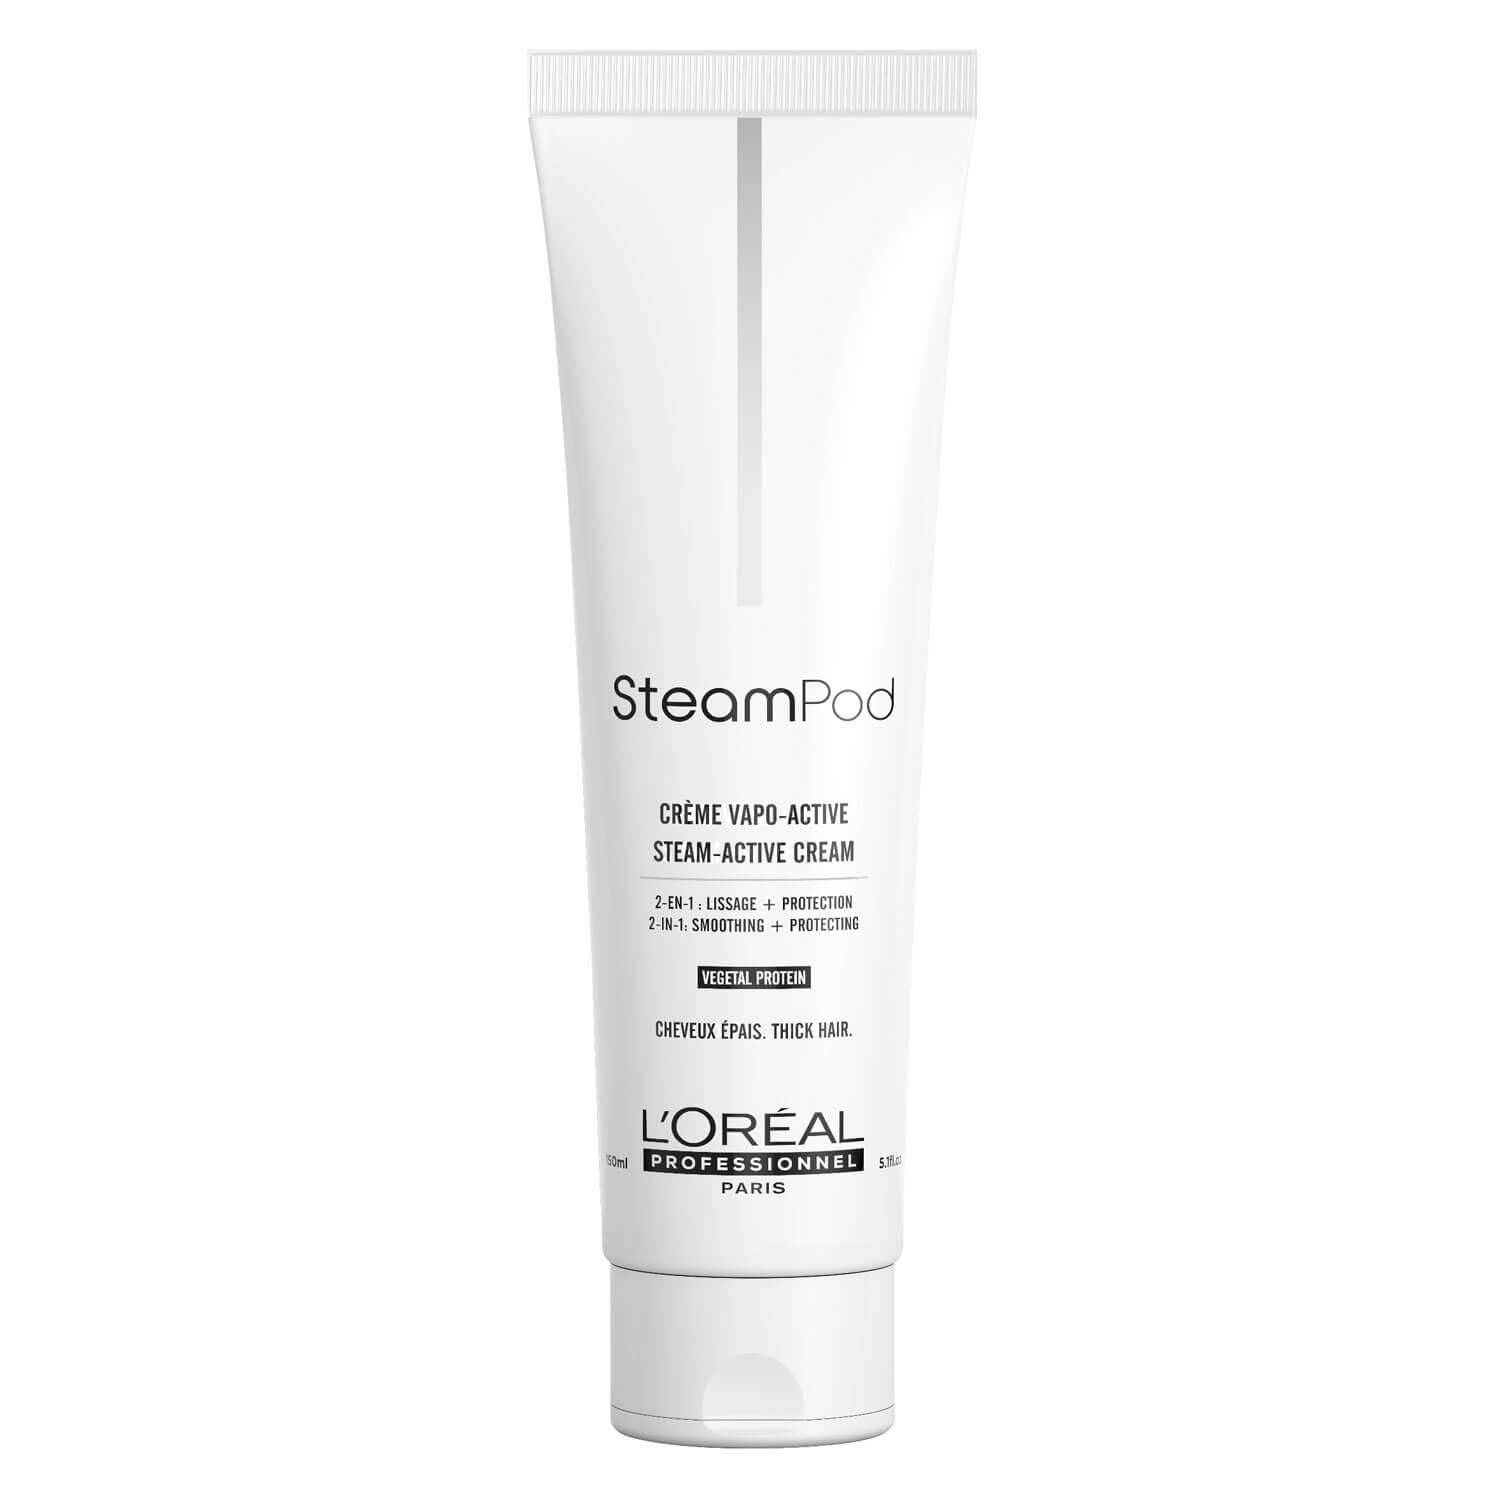 Produktbild von Steampod - Steam-Activated Cream dickes Haar